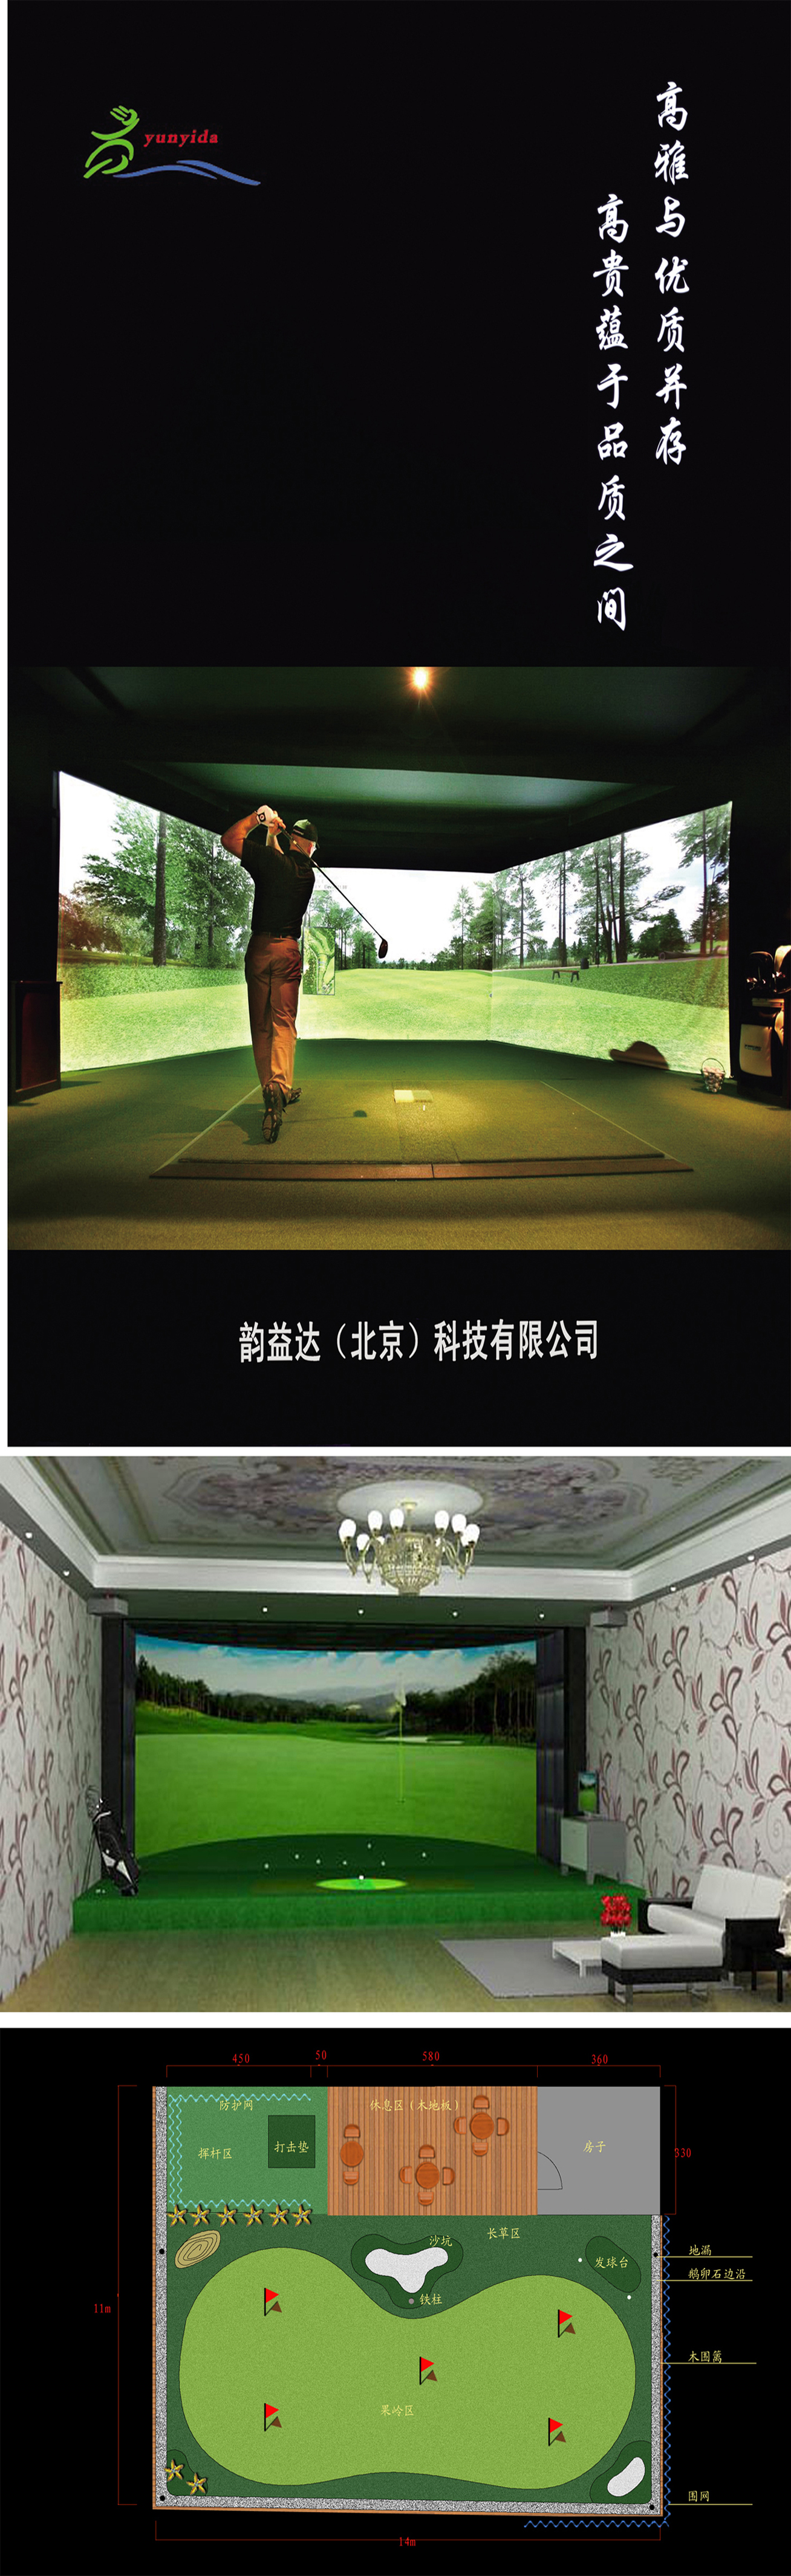 室内高尔夫模拟练习场 03.jpg